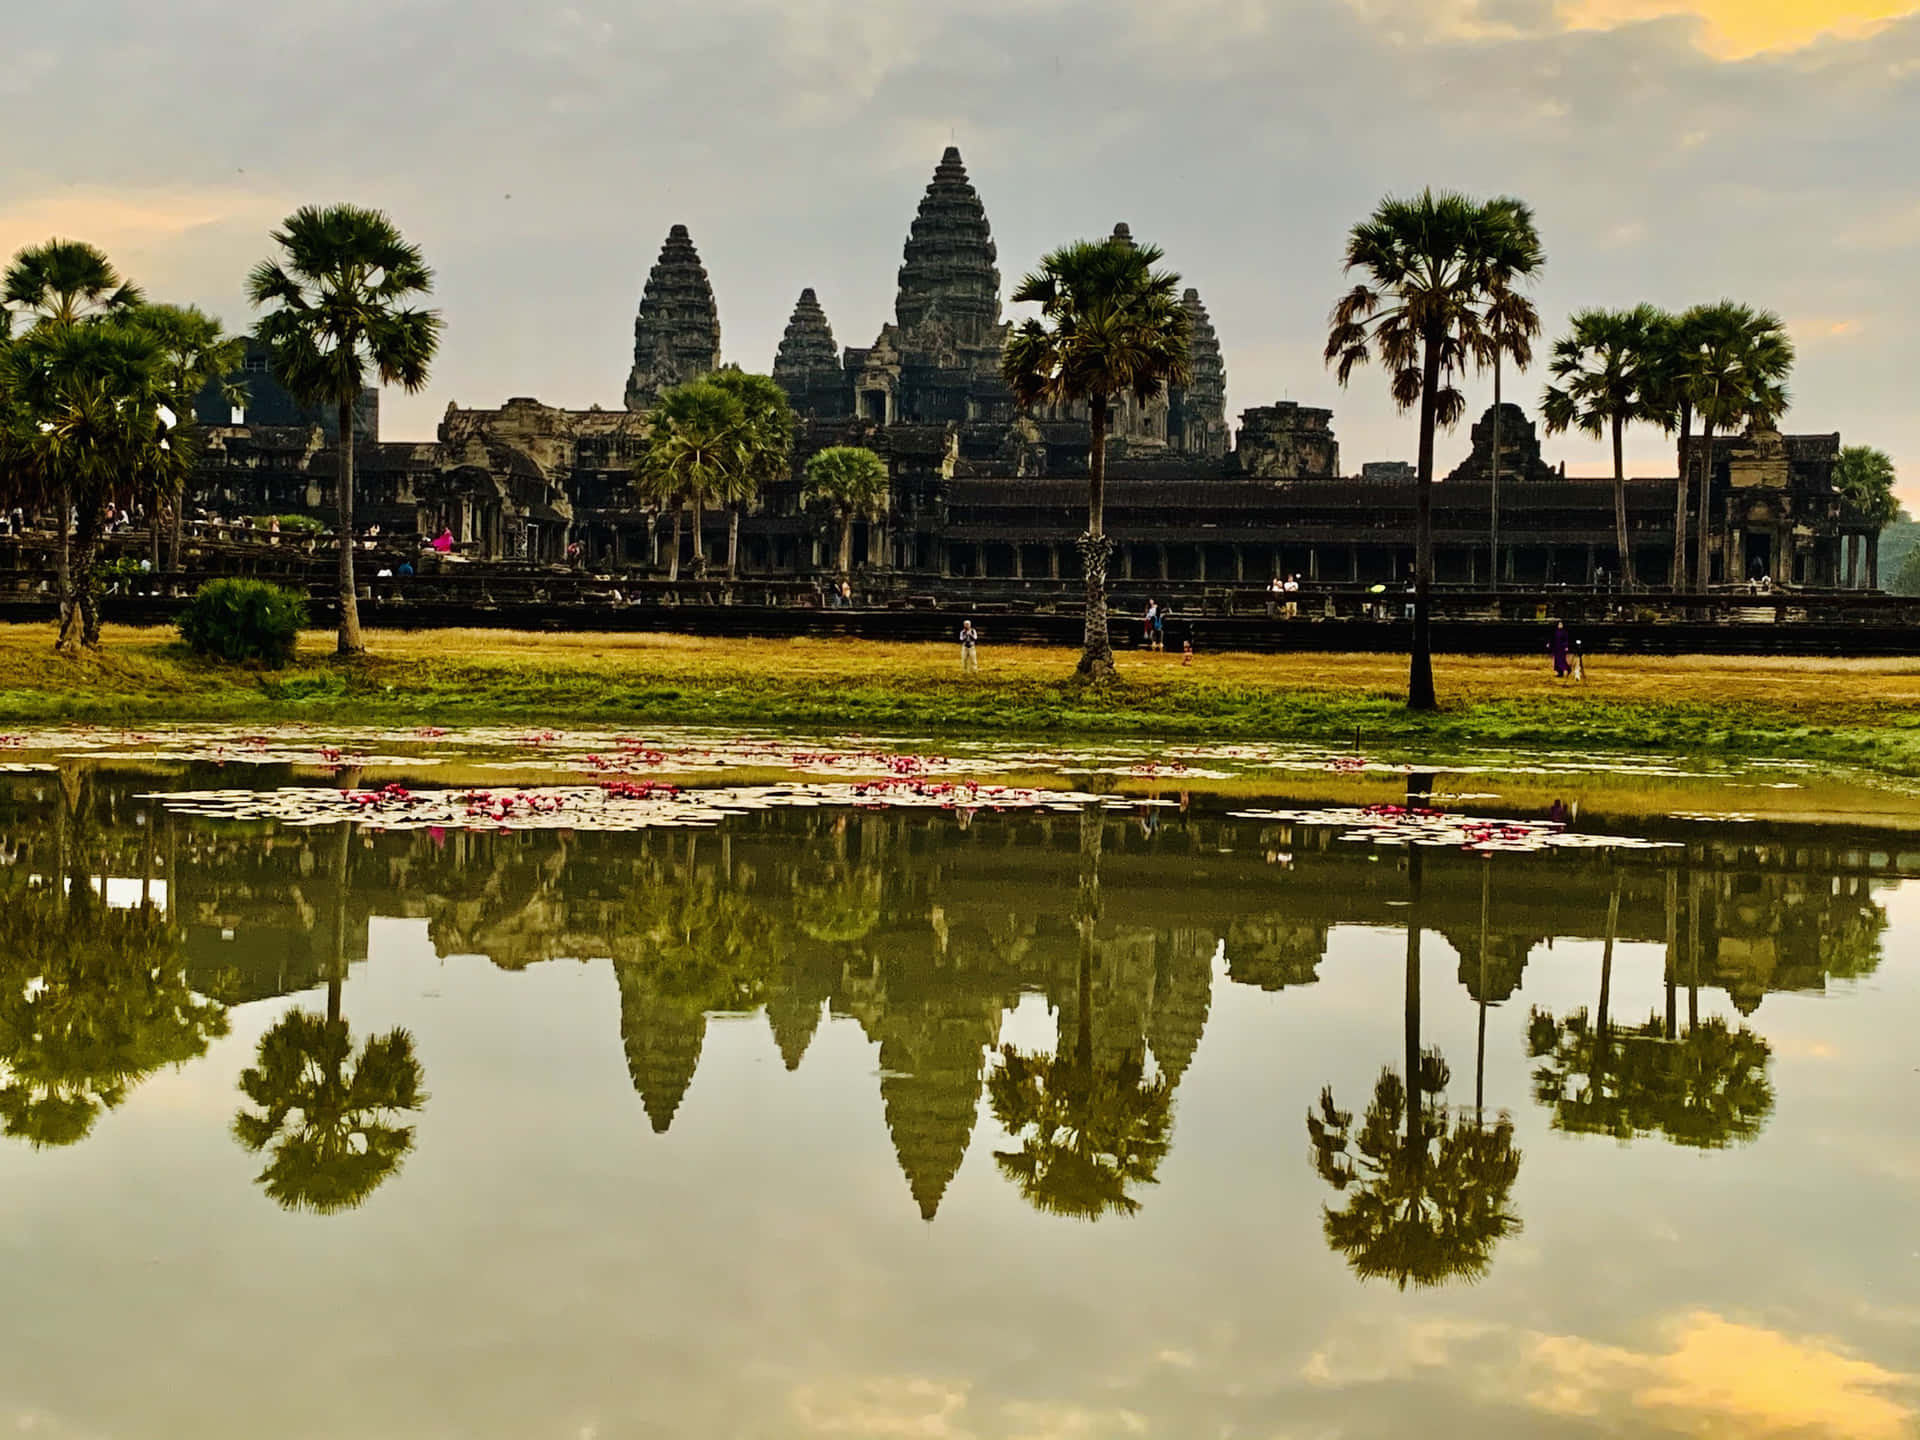 Reflektionav Angkor Thom I Vatten. Wallpaper